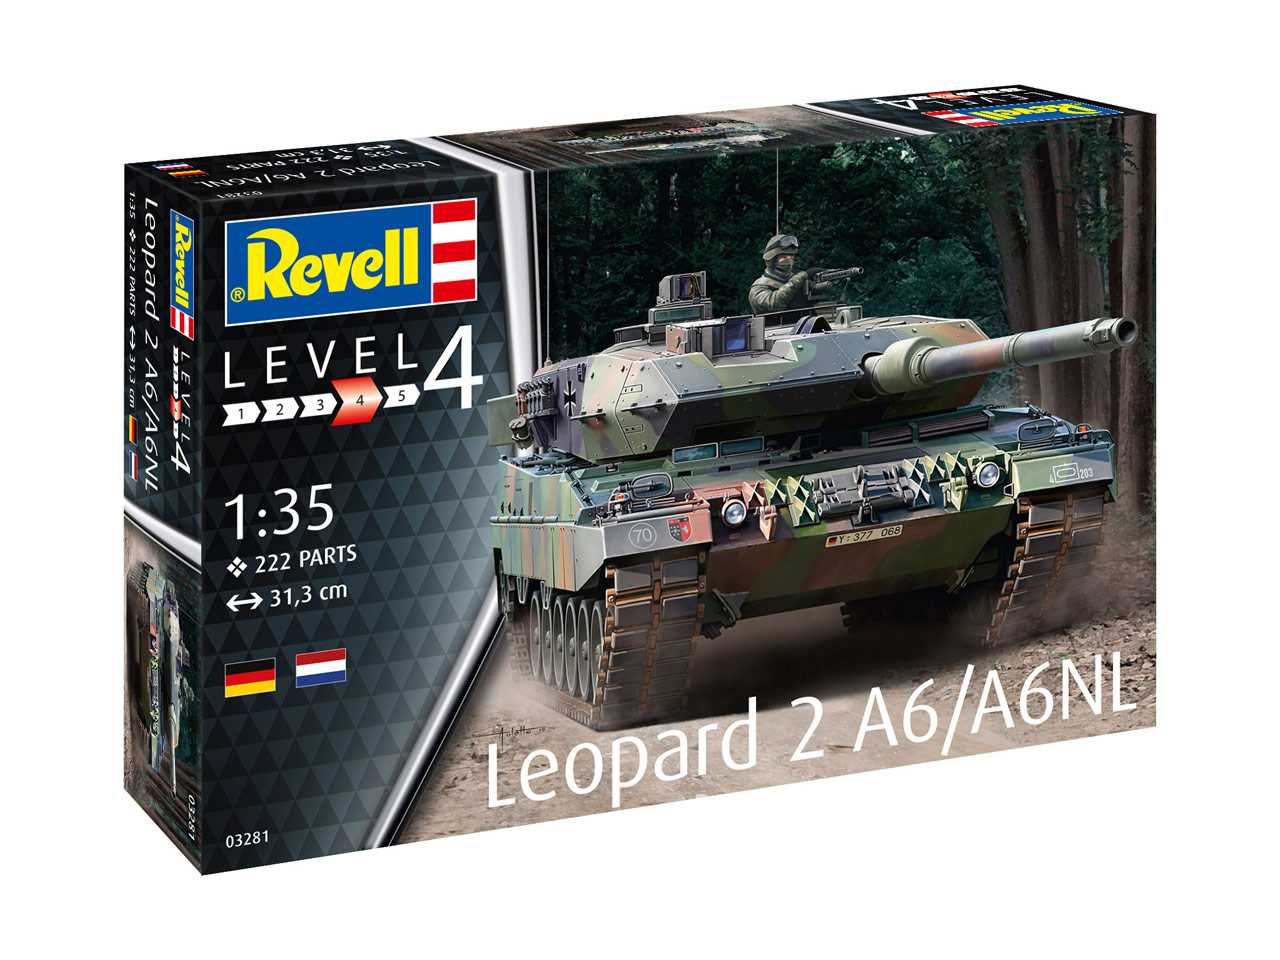 Fotografie Plastic ModelKit tank 03281 - Leopard 2 A6/A6NL (1:35)